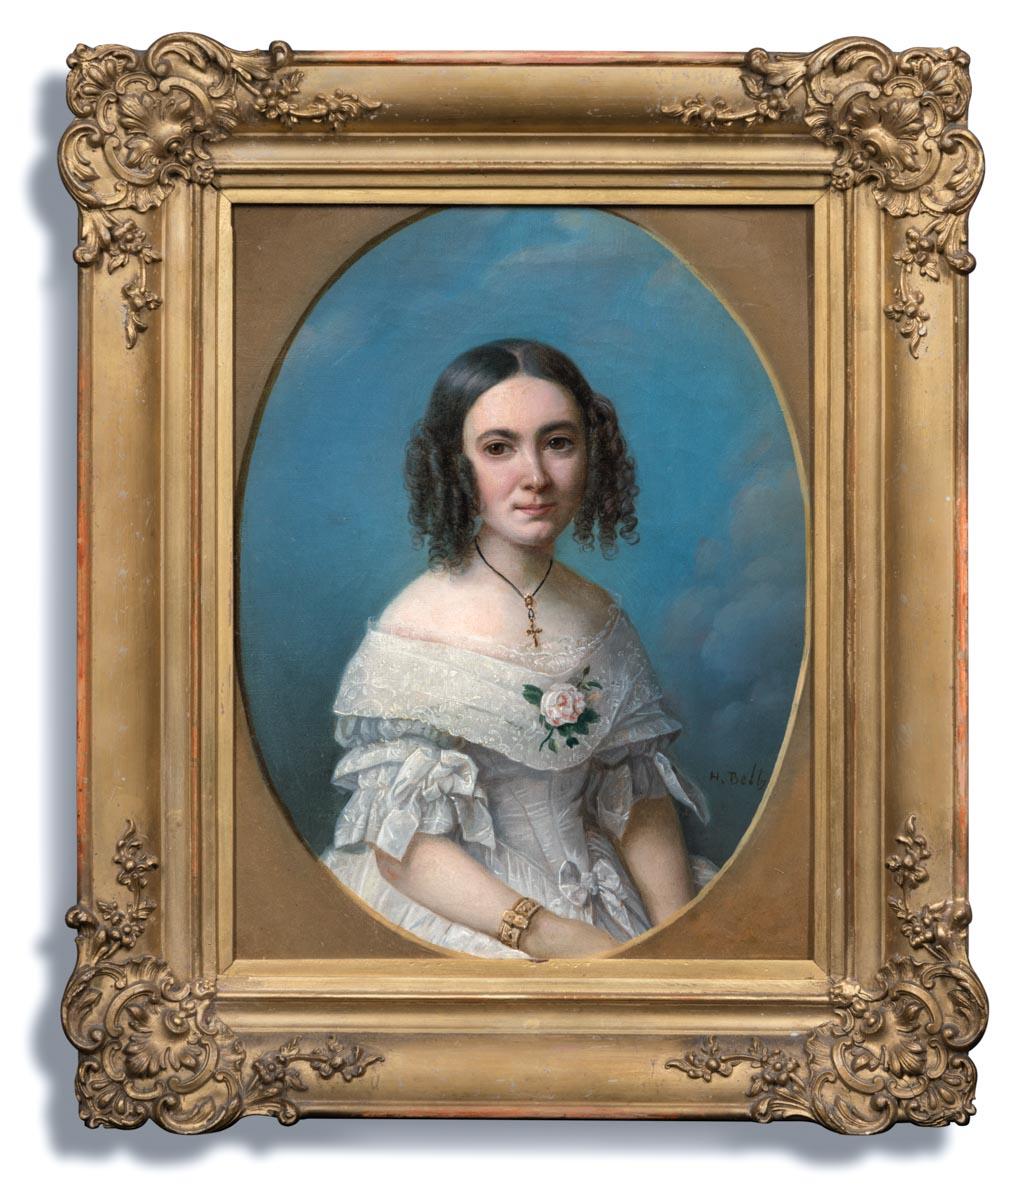 Signiertes Porträt einer jungen Dame im weißen Kleid 1840er Jahre, Ölgemälde auf Leinwand